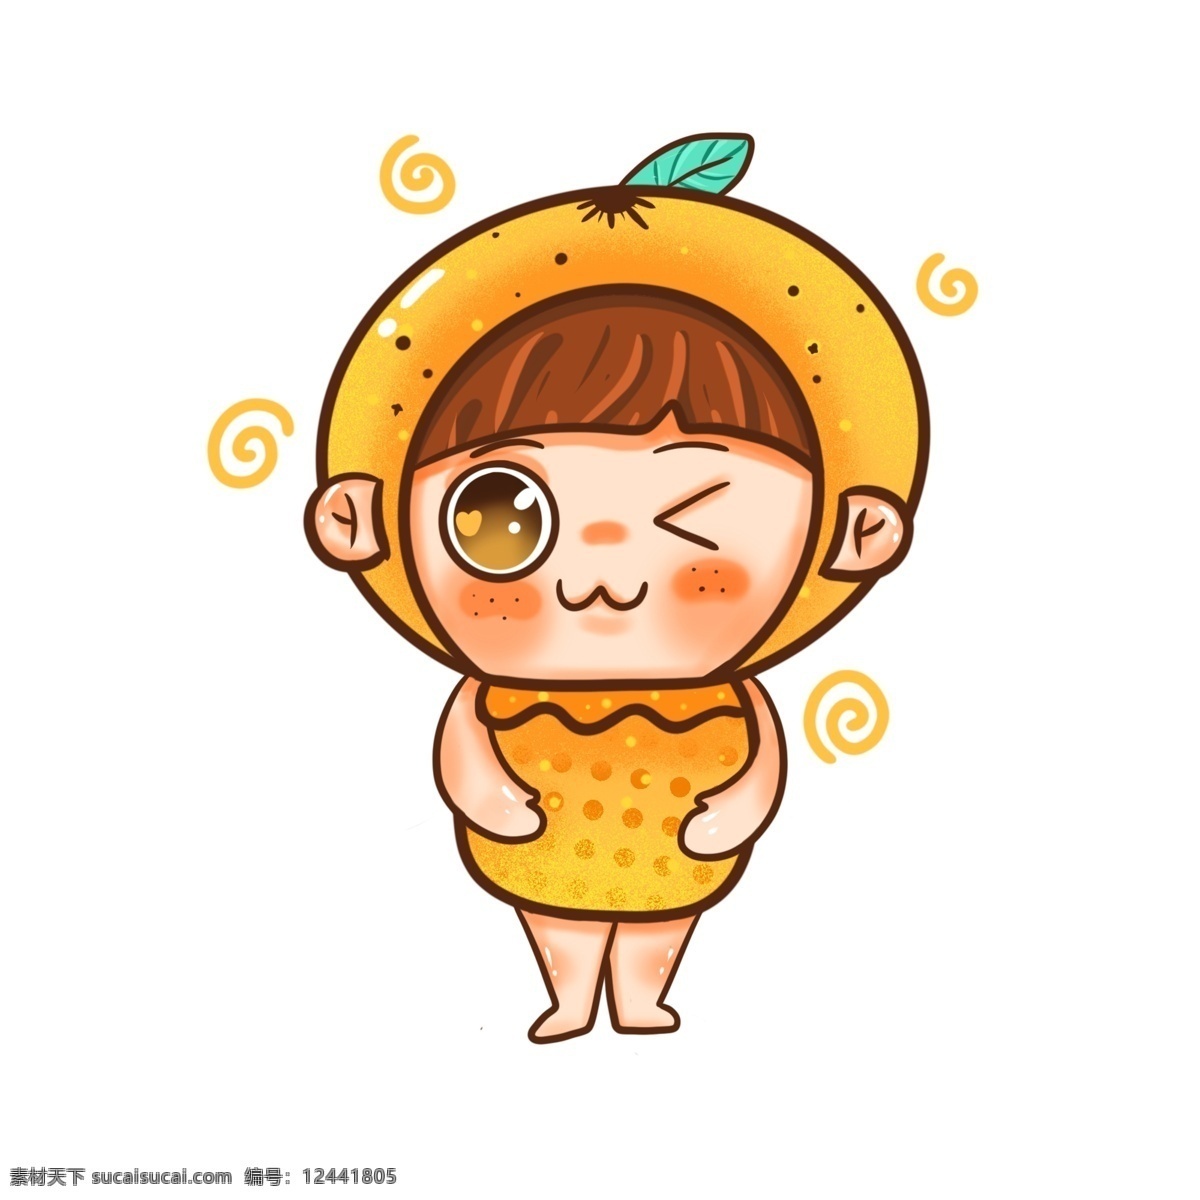 橘子 可爱 卡通 笑脸 水果 拟人 幼稚园 形象 酸酸甜甜 儿童形象 吉祥物 黄色